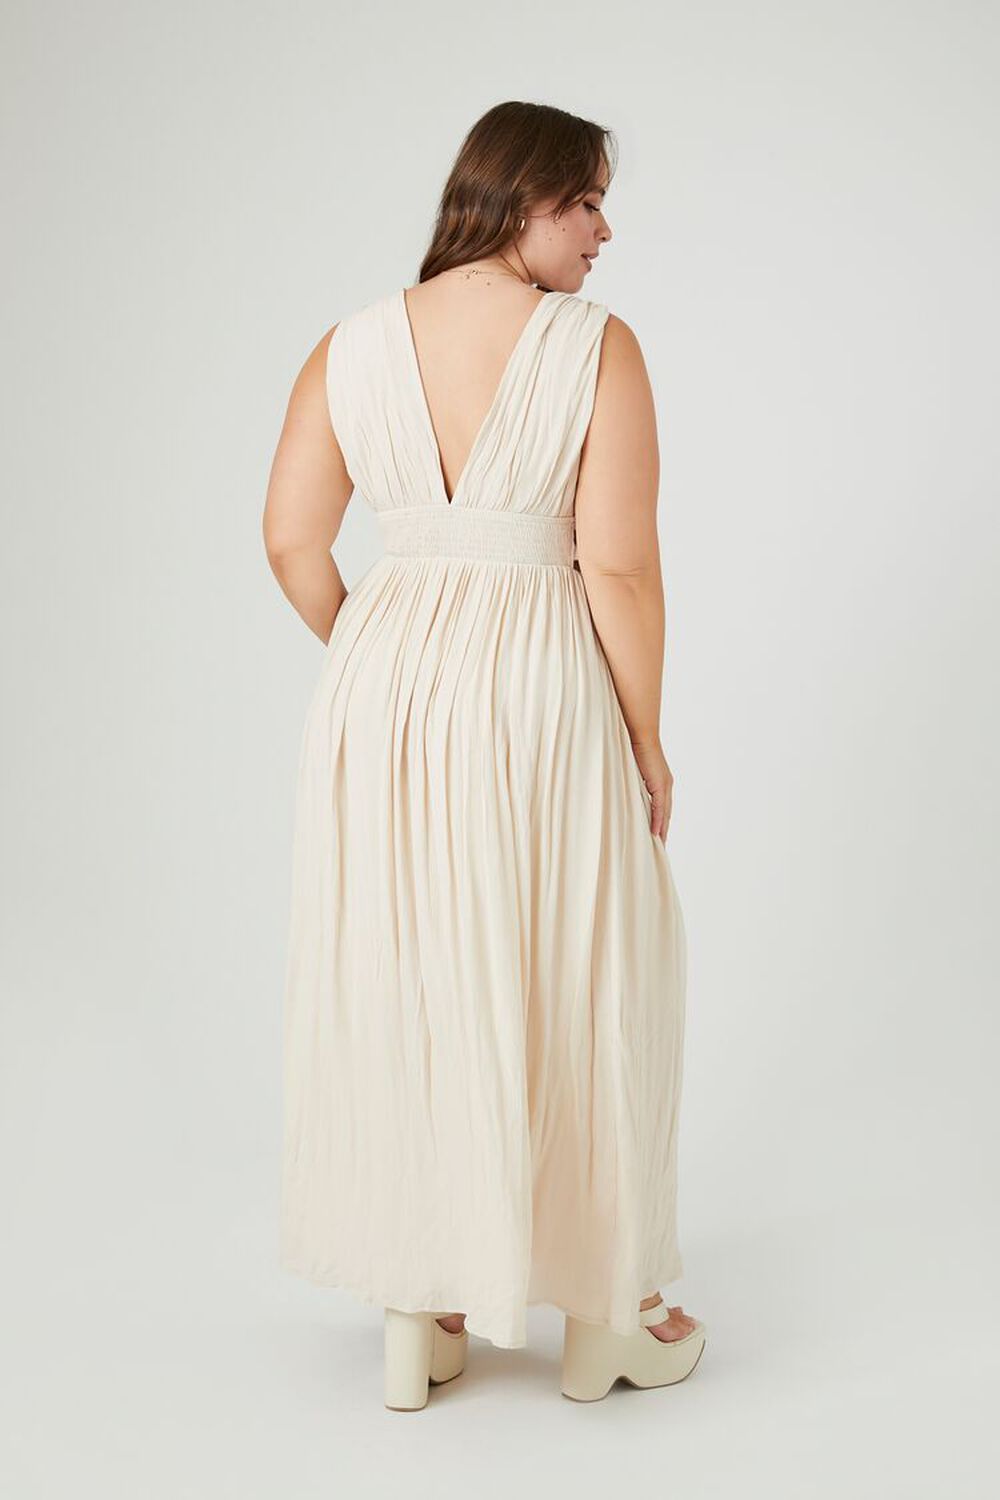 SANDSHELL Plus Size Plunging Sleeveless Maxi Dress, image 3